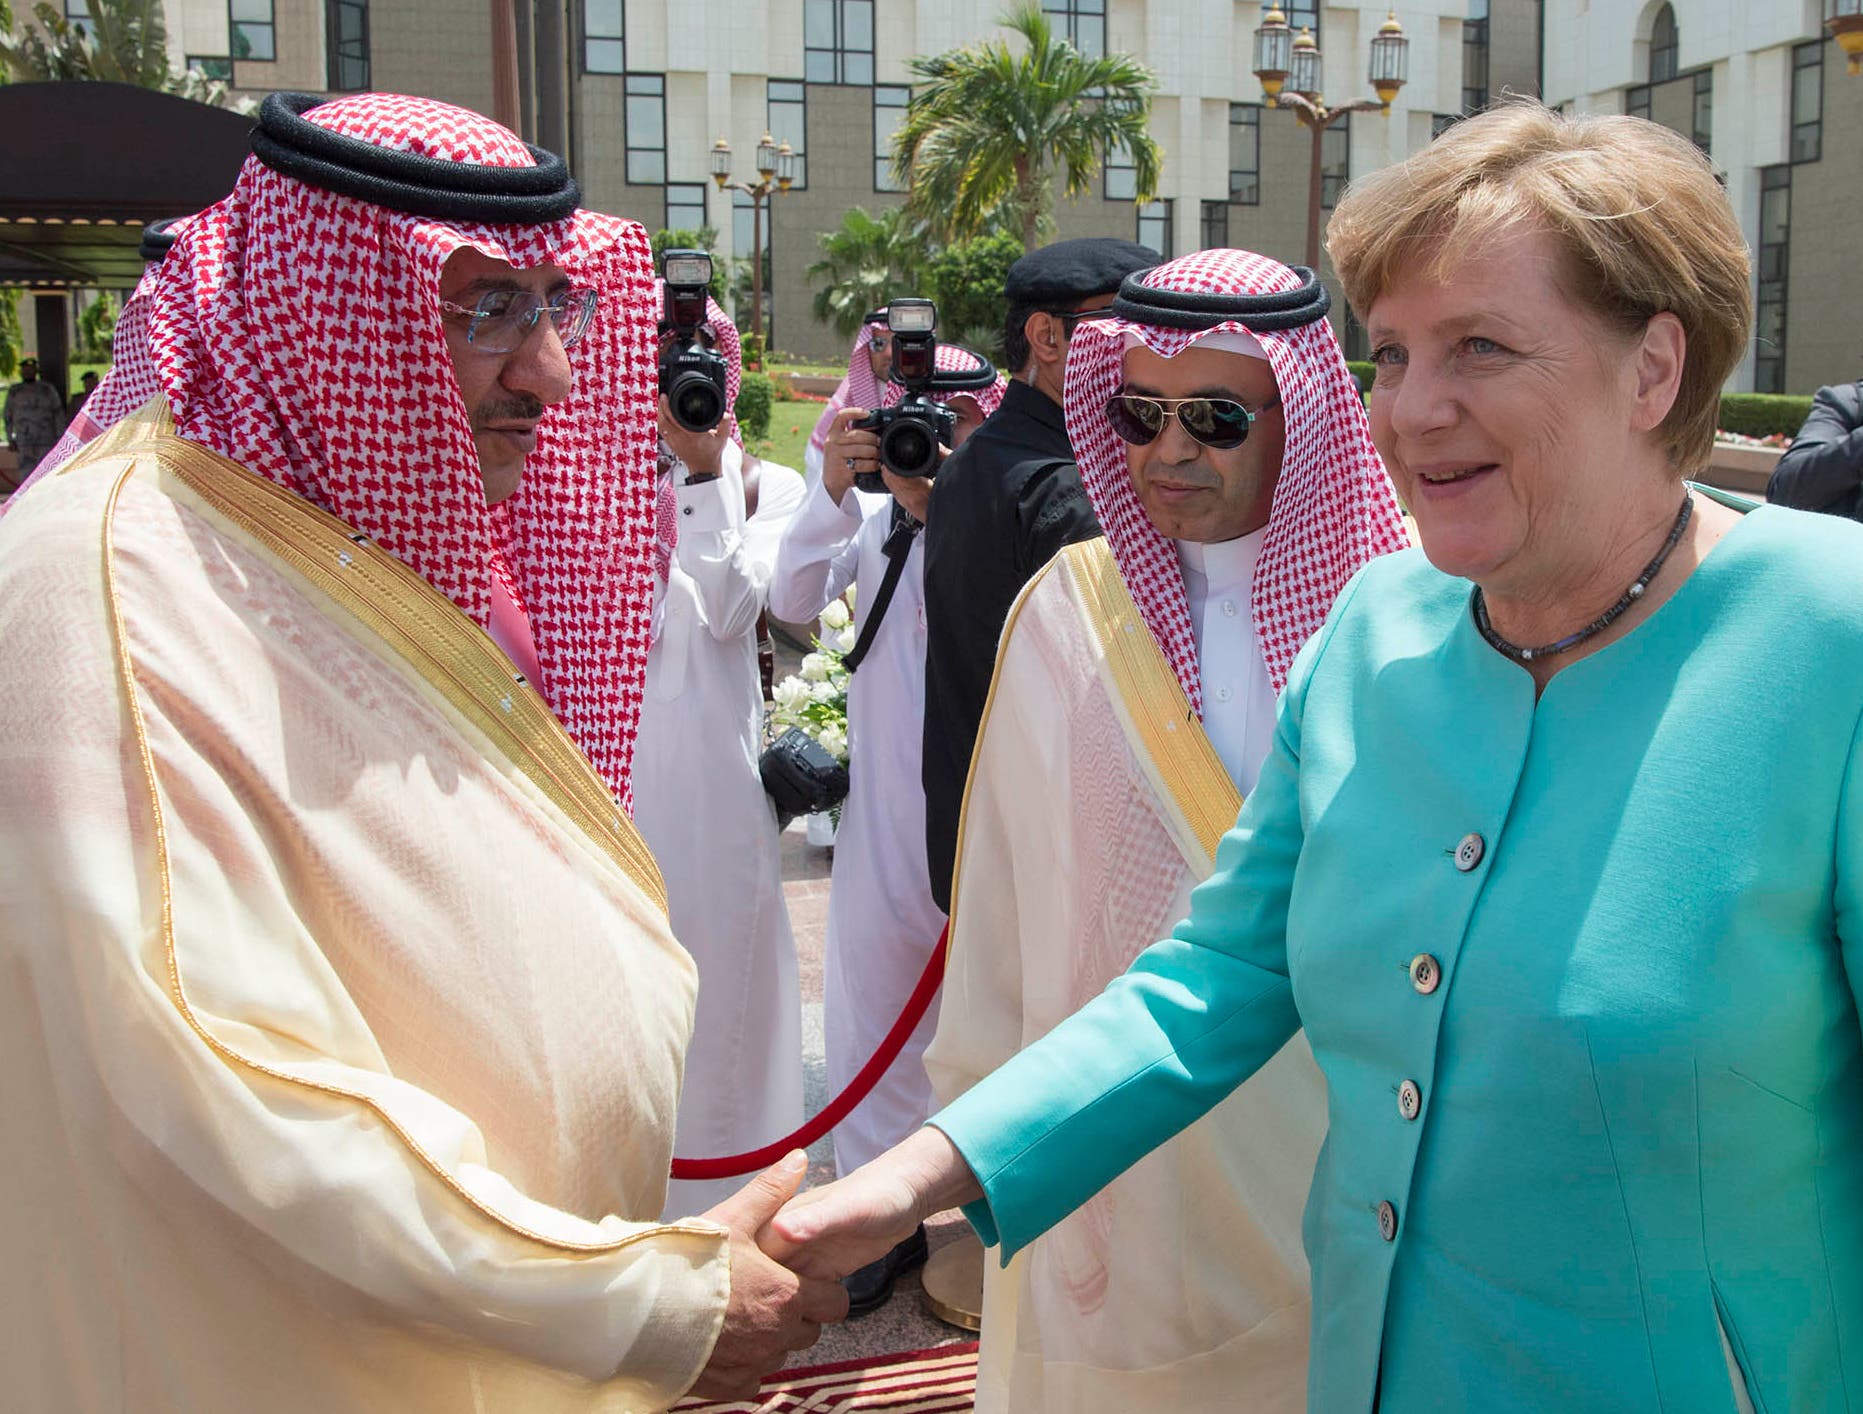 Germany's Merkel in Saudi Arabia